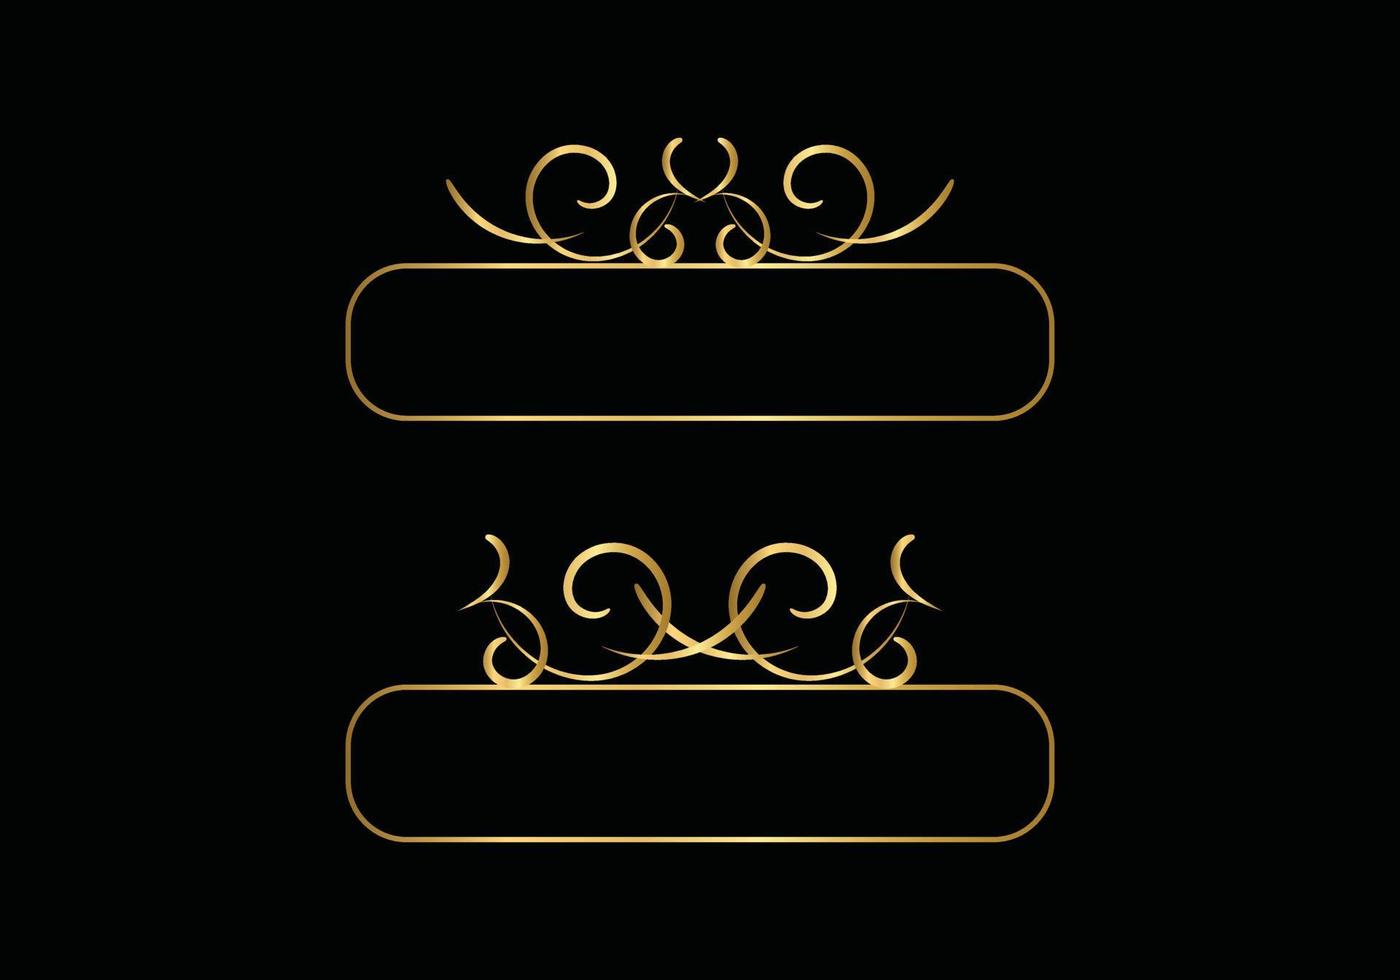 modèle de logo de luxe de lettre initiale dans l'art vectoriel pour restaurant, hôtel, héraldique, bijoux, mode et autres illustrations vectorielles.